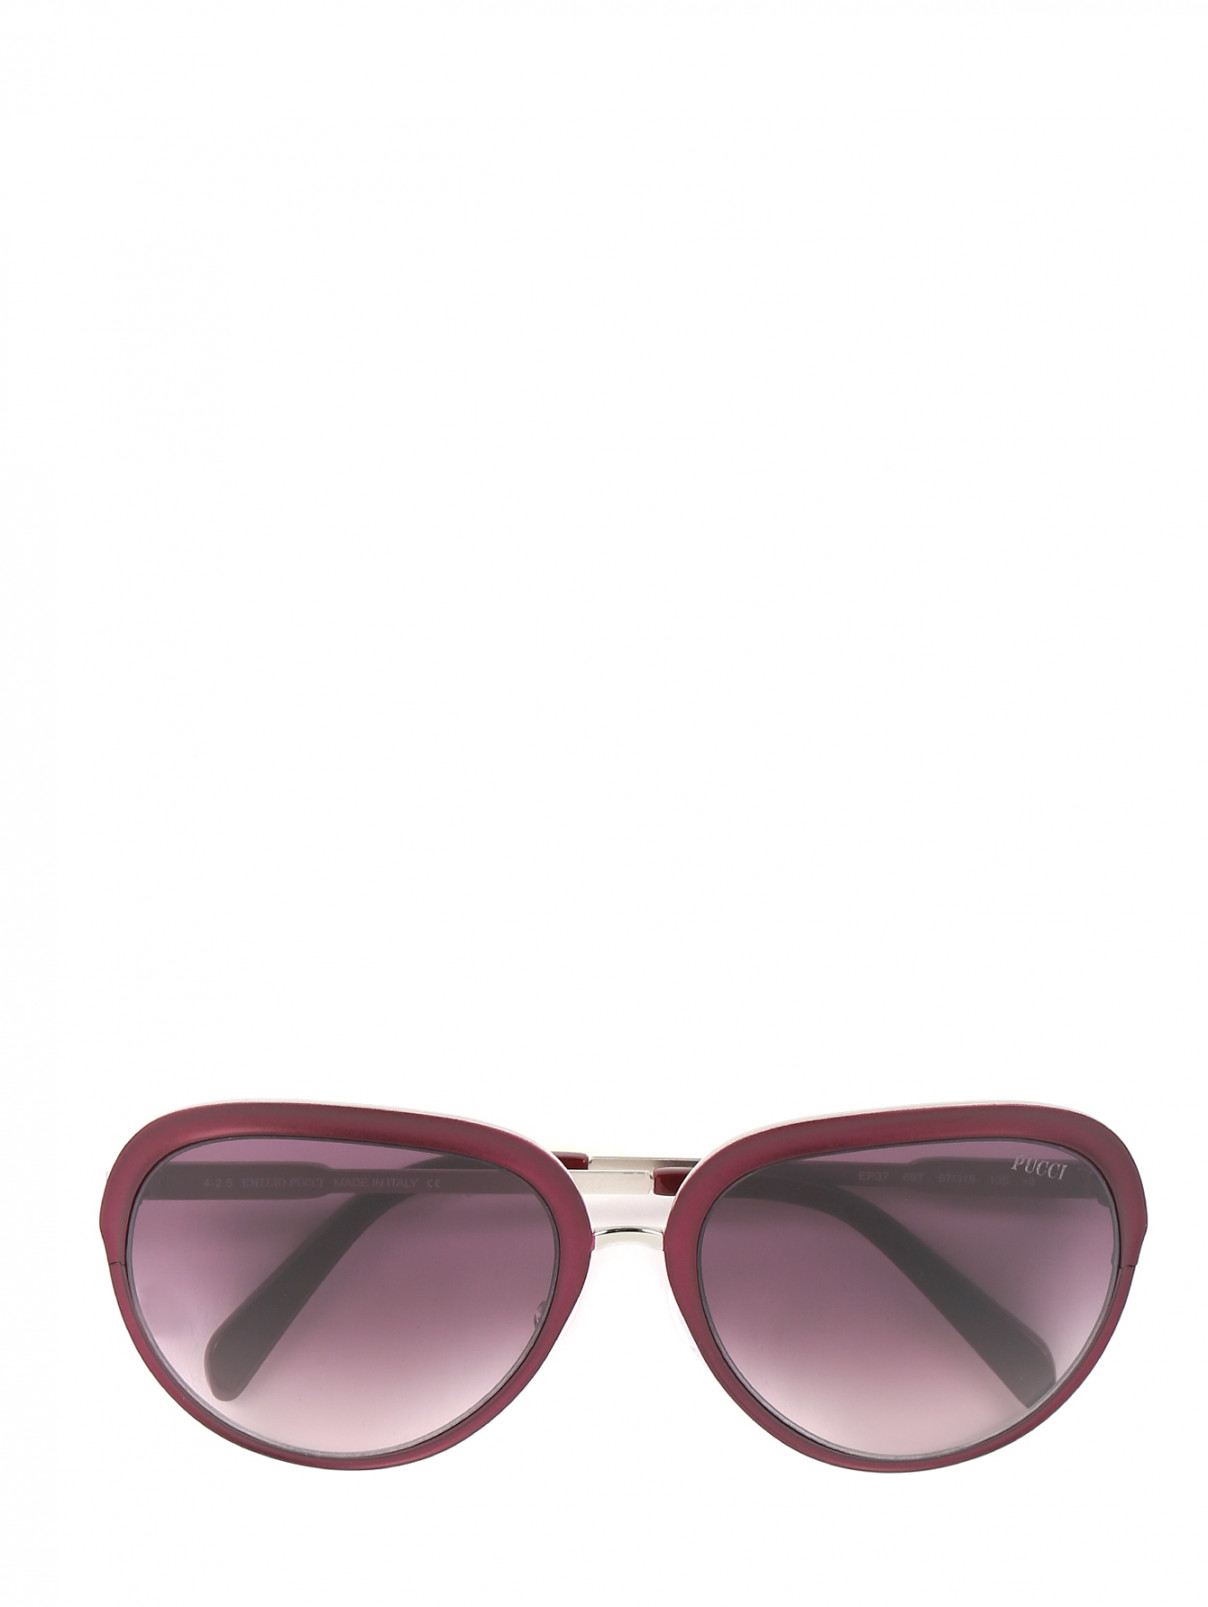 Солнцезащитные очки в оправе из металла Emilio Pucci  –  Общий вид  – Цвет:  Красный